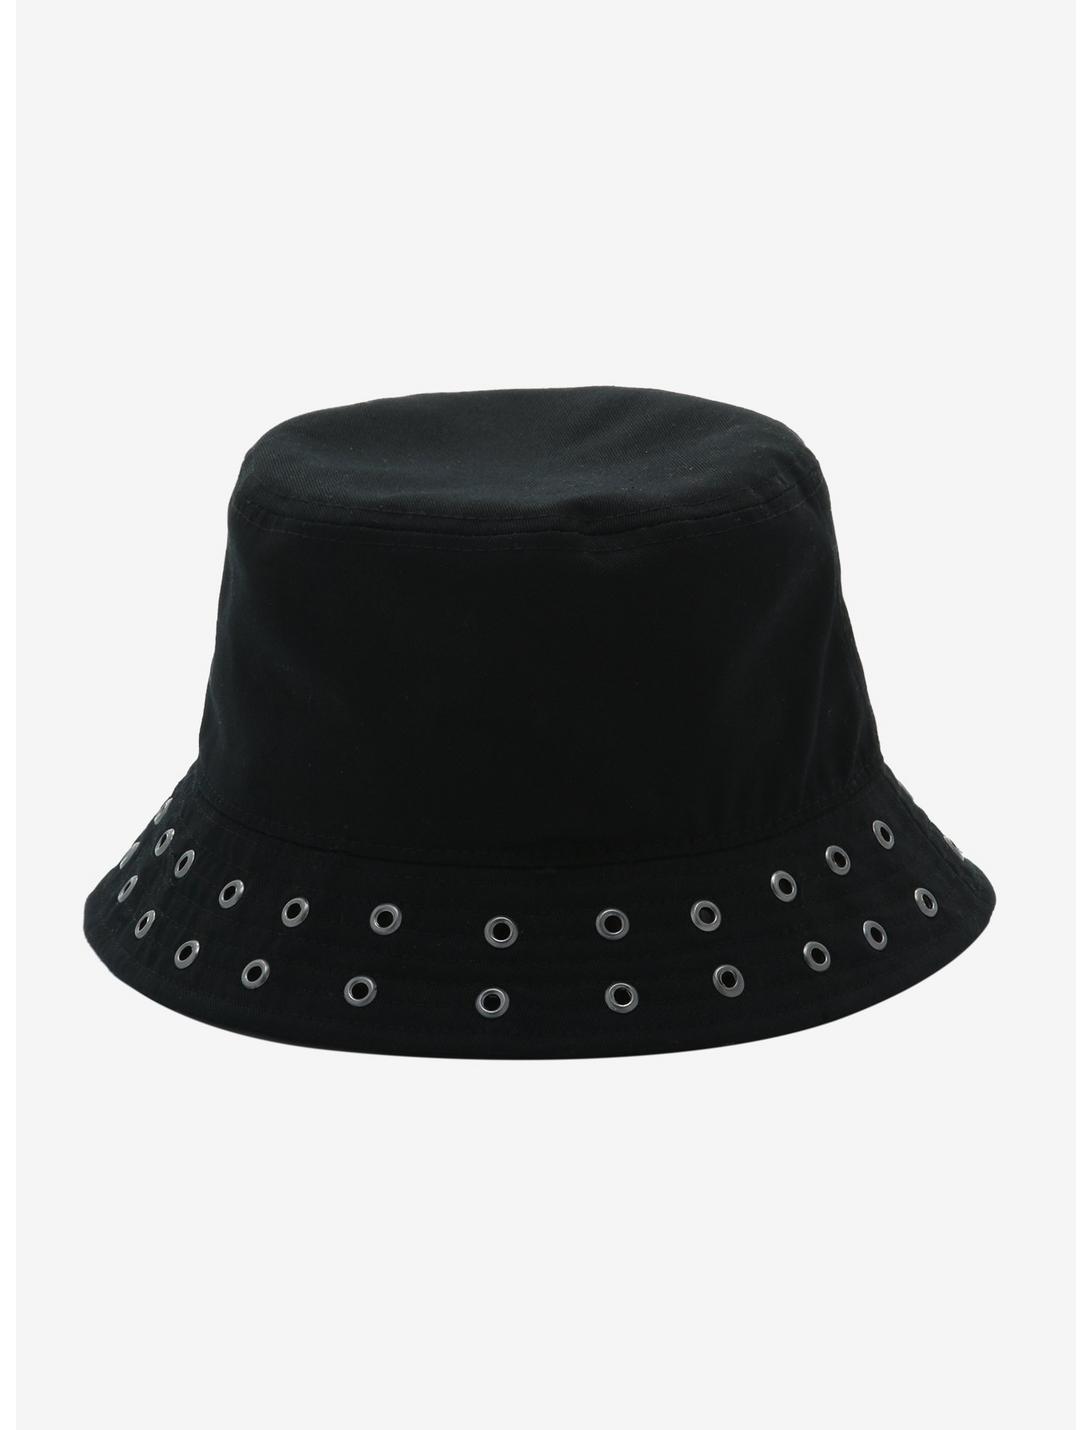 Black Grommet Bucket Hat, , hi-res